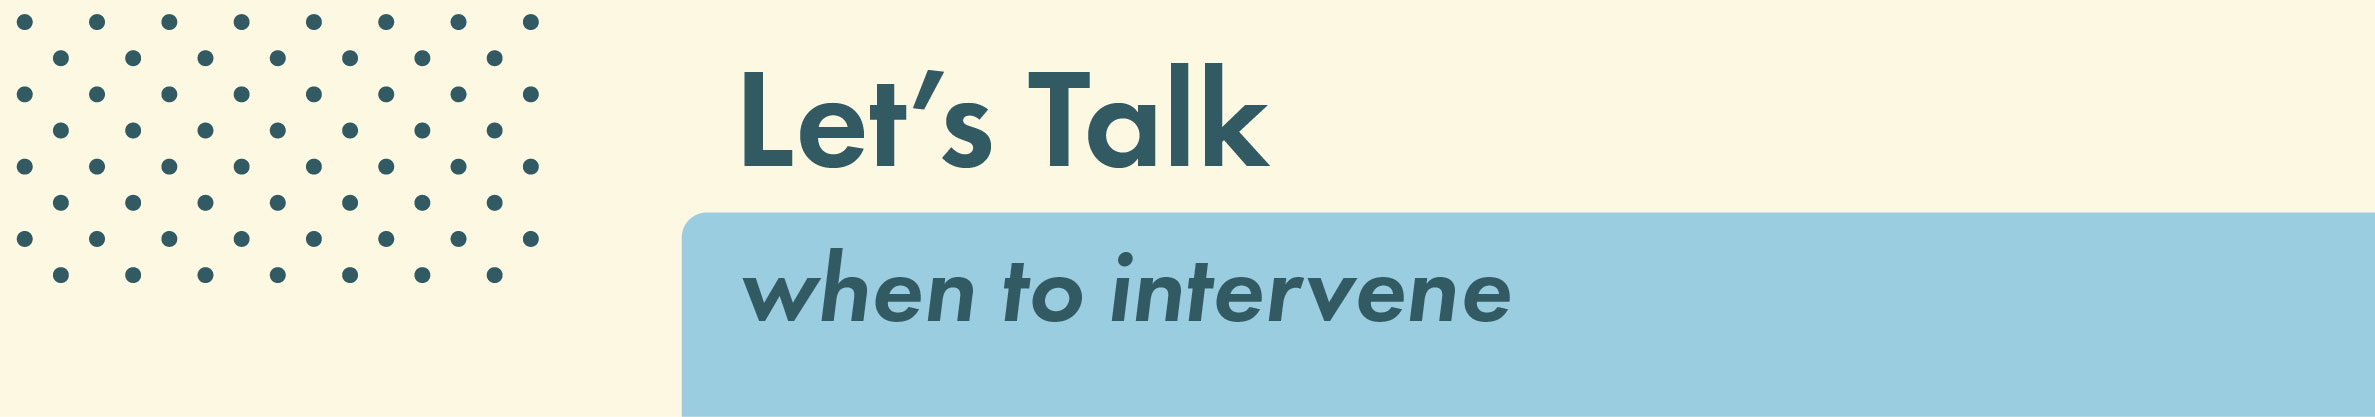 Let's Talk: When to Intervene 